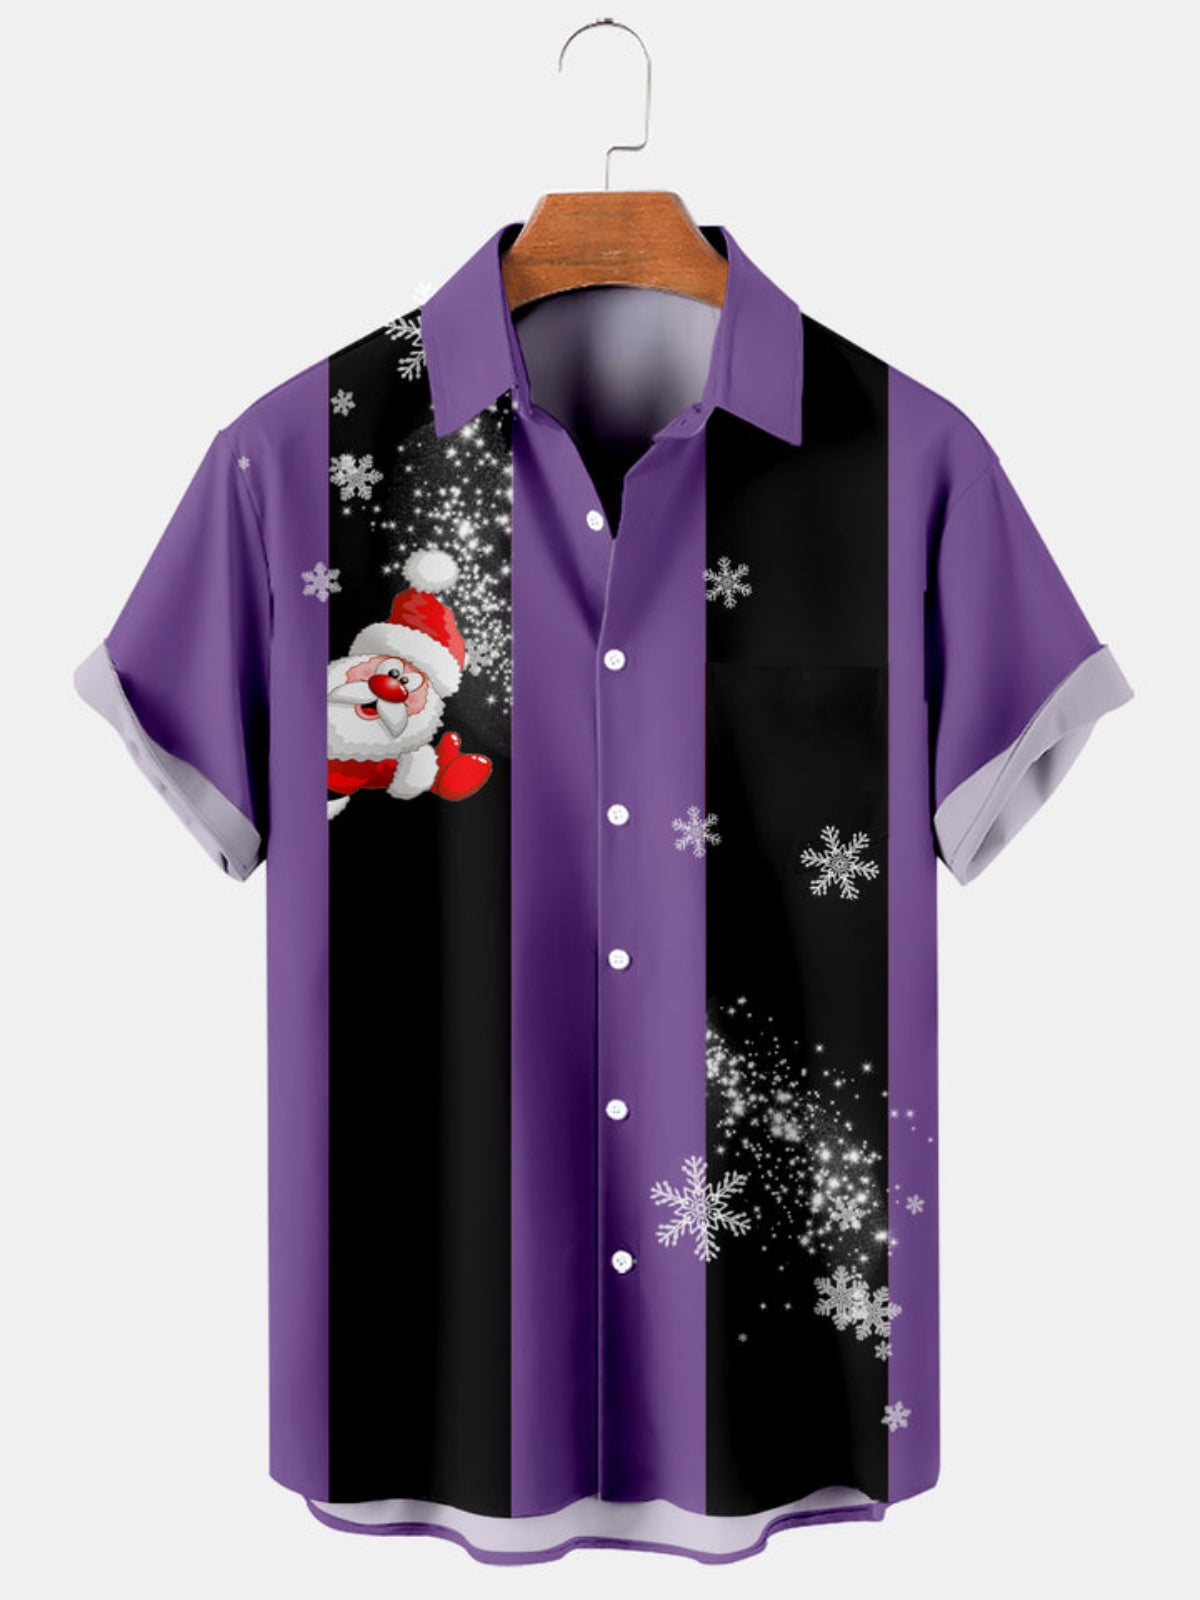 Snowflake Holiday Bowling Shirt